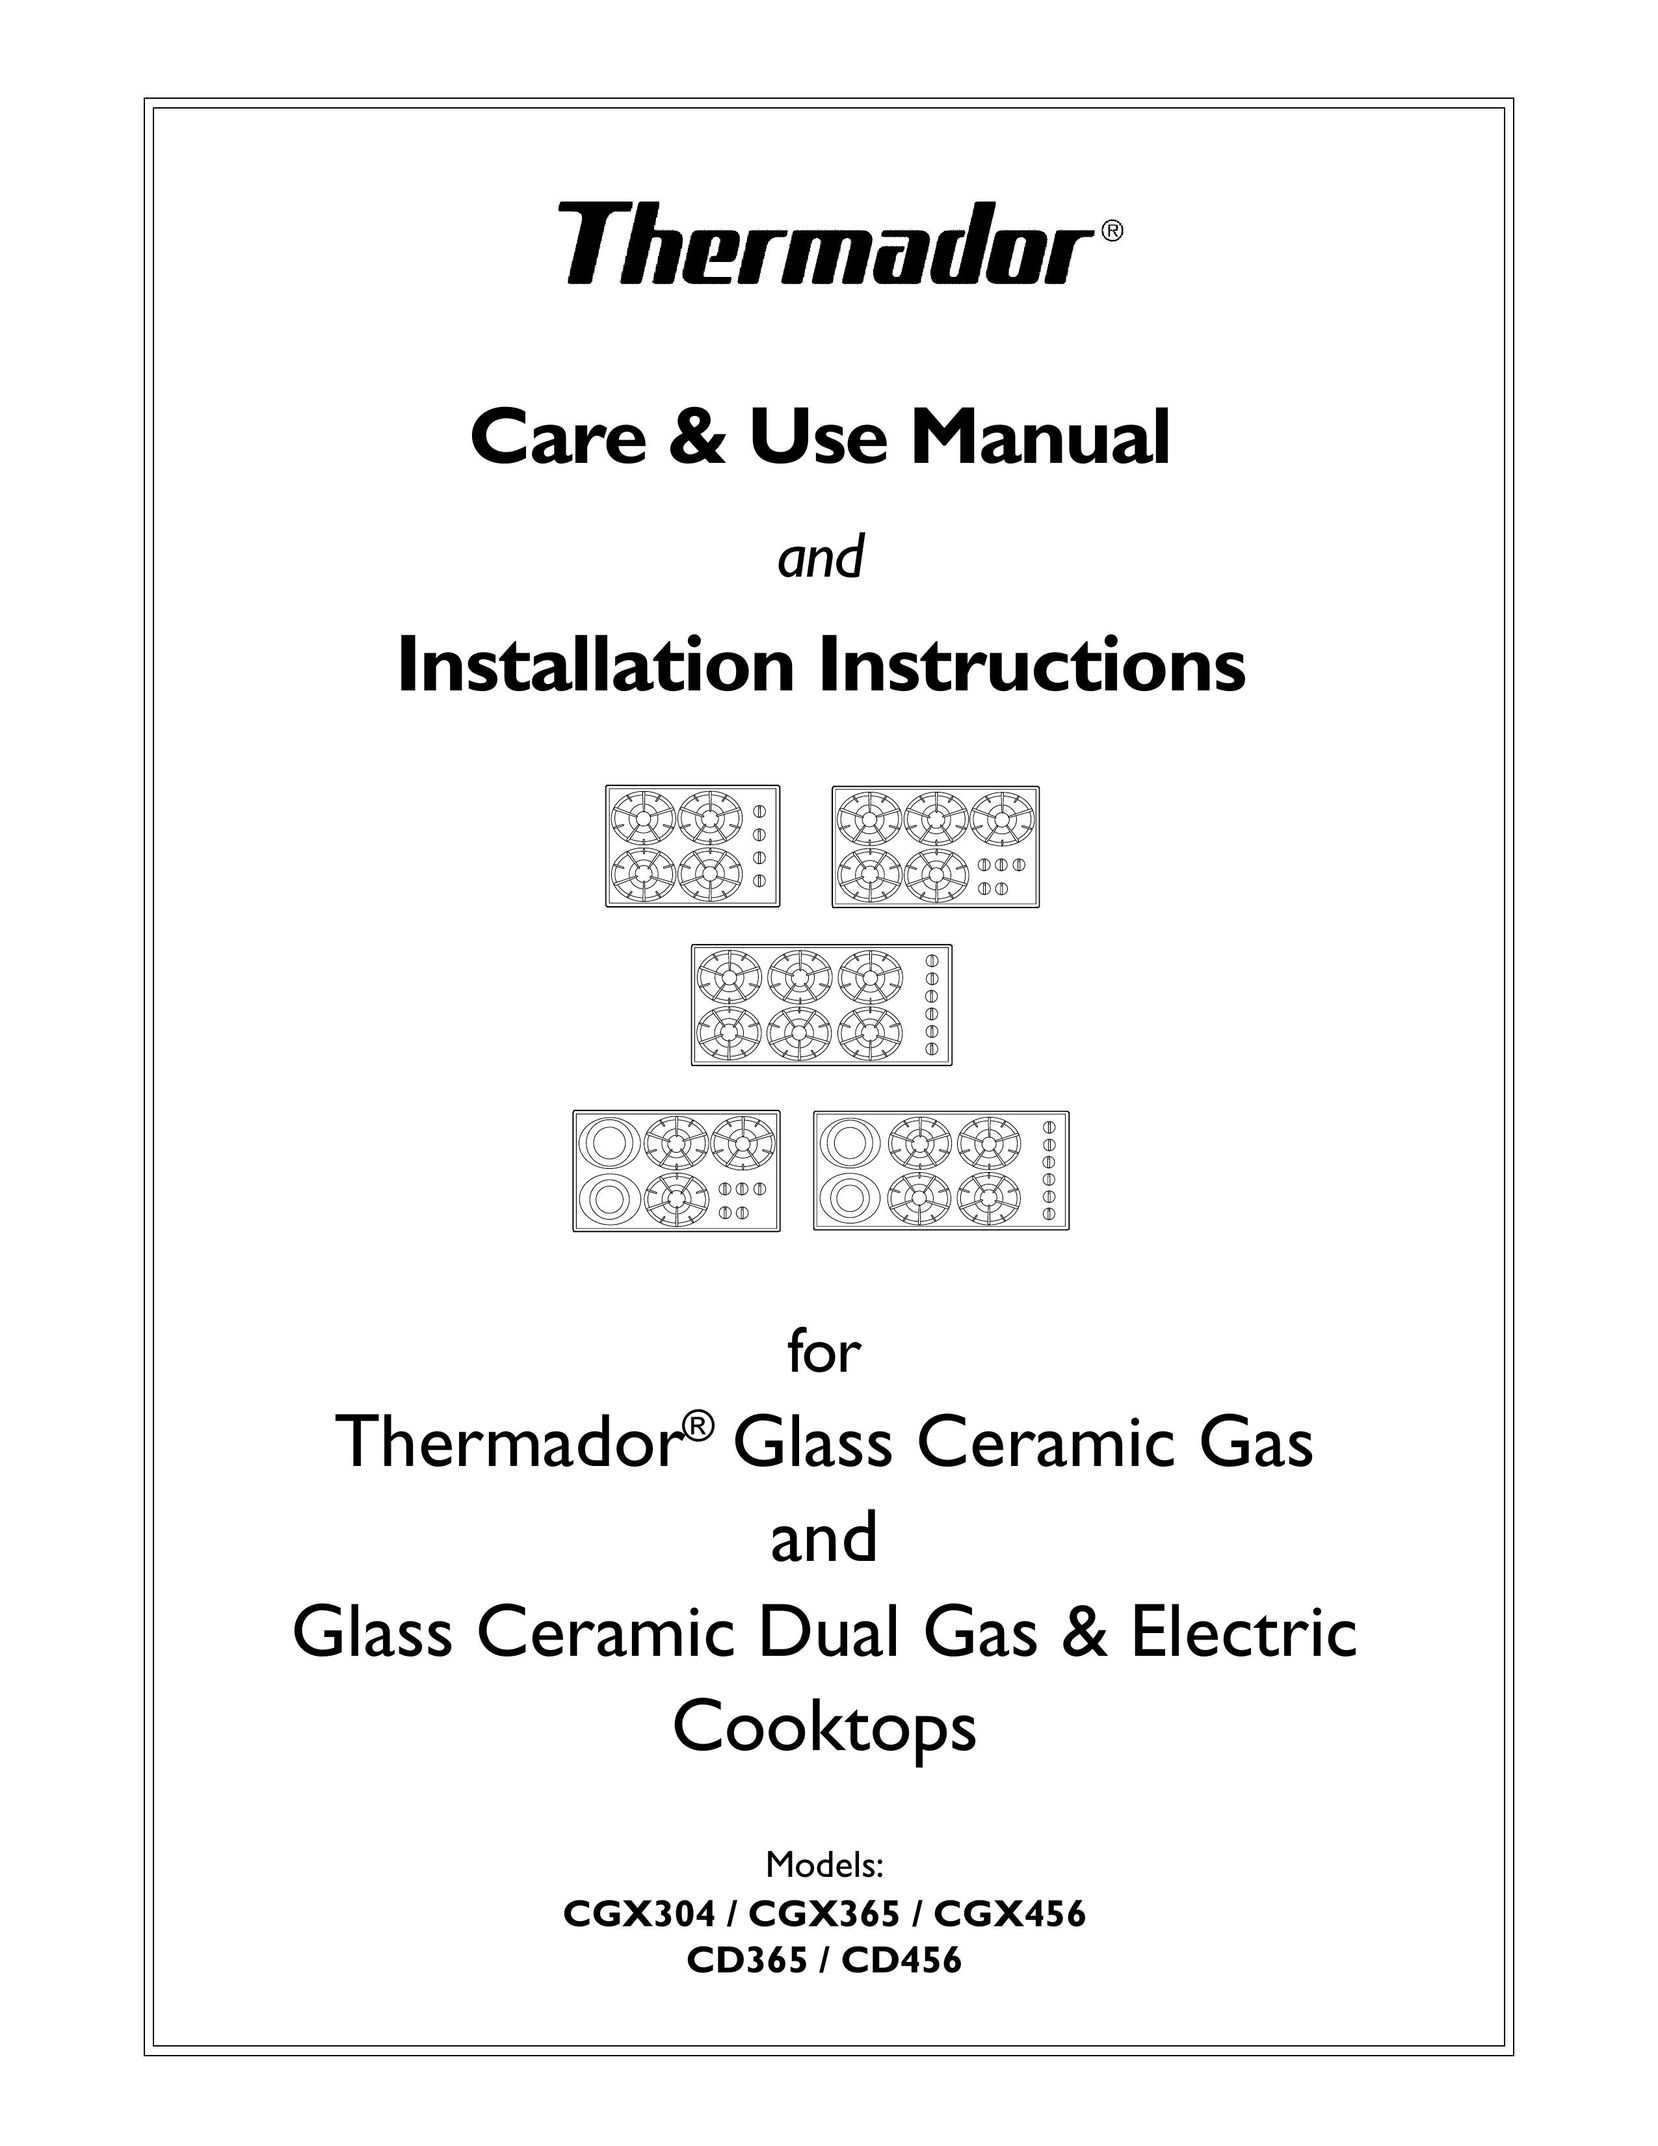 Thermador CD456 Cooktop User Manual